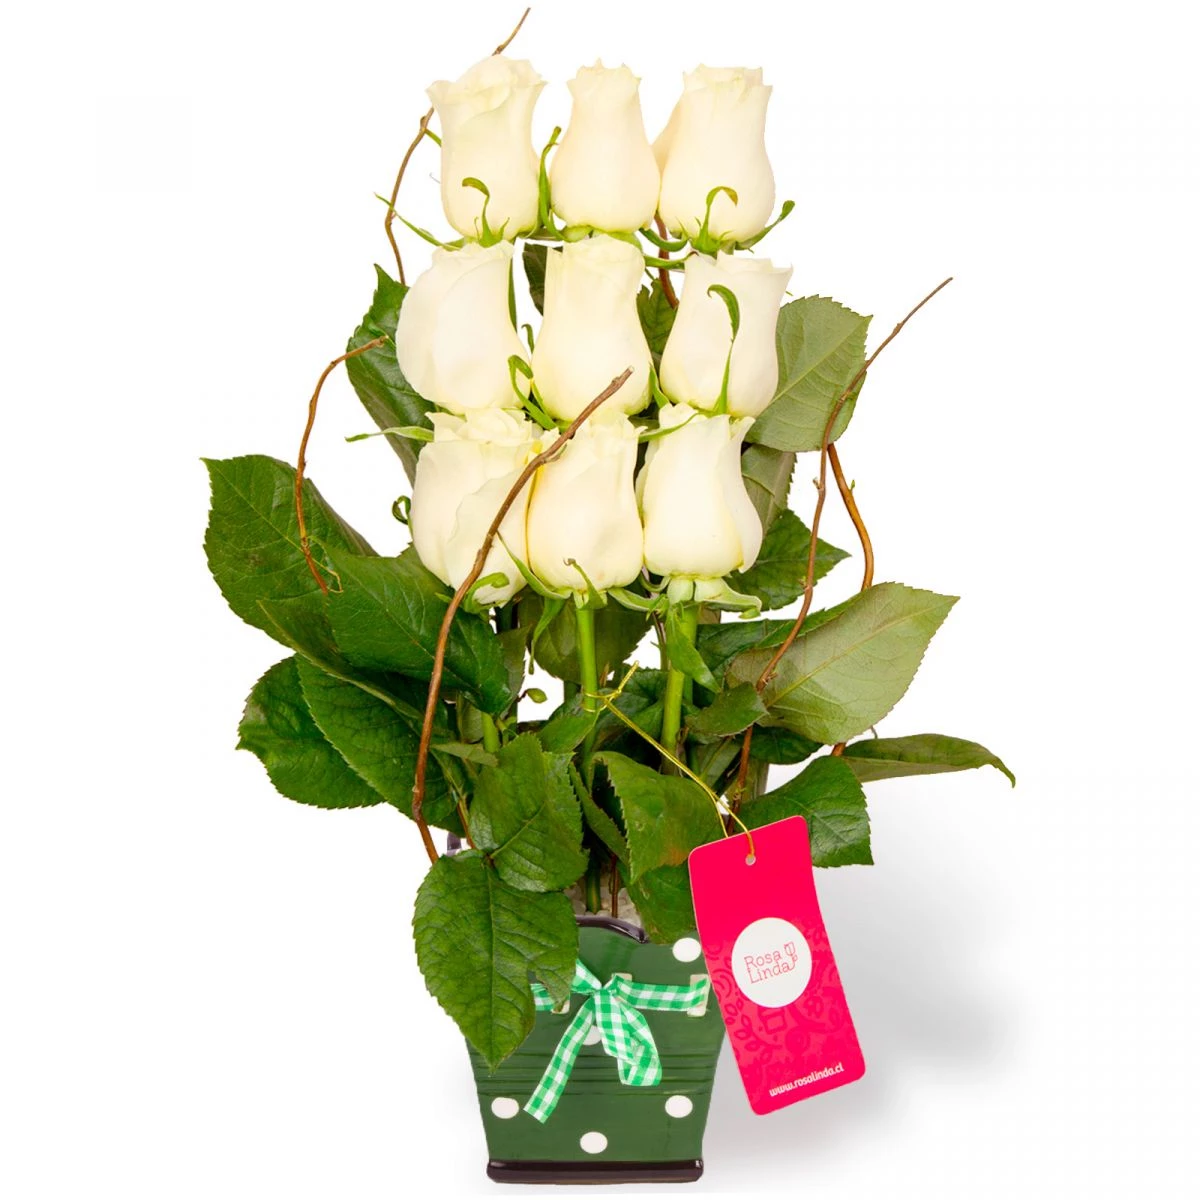 Foto principal Aurora blanco - Arreglo floral con 9 rosas ecuatorianas blancas